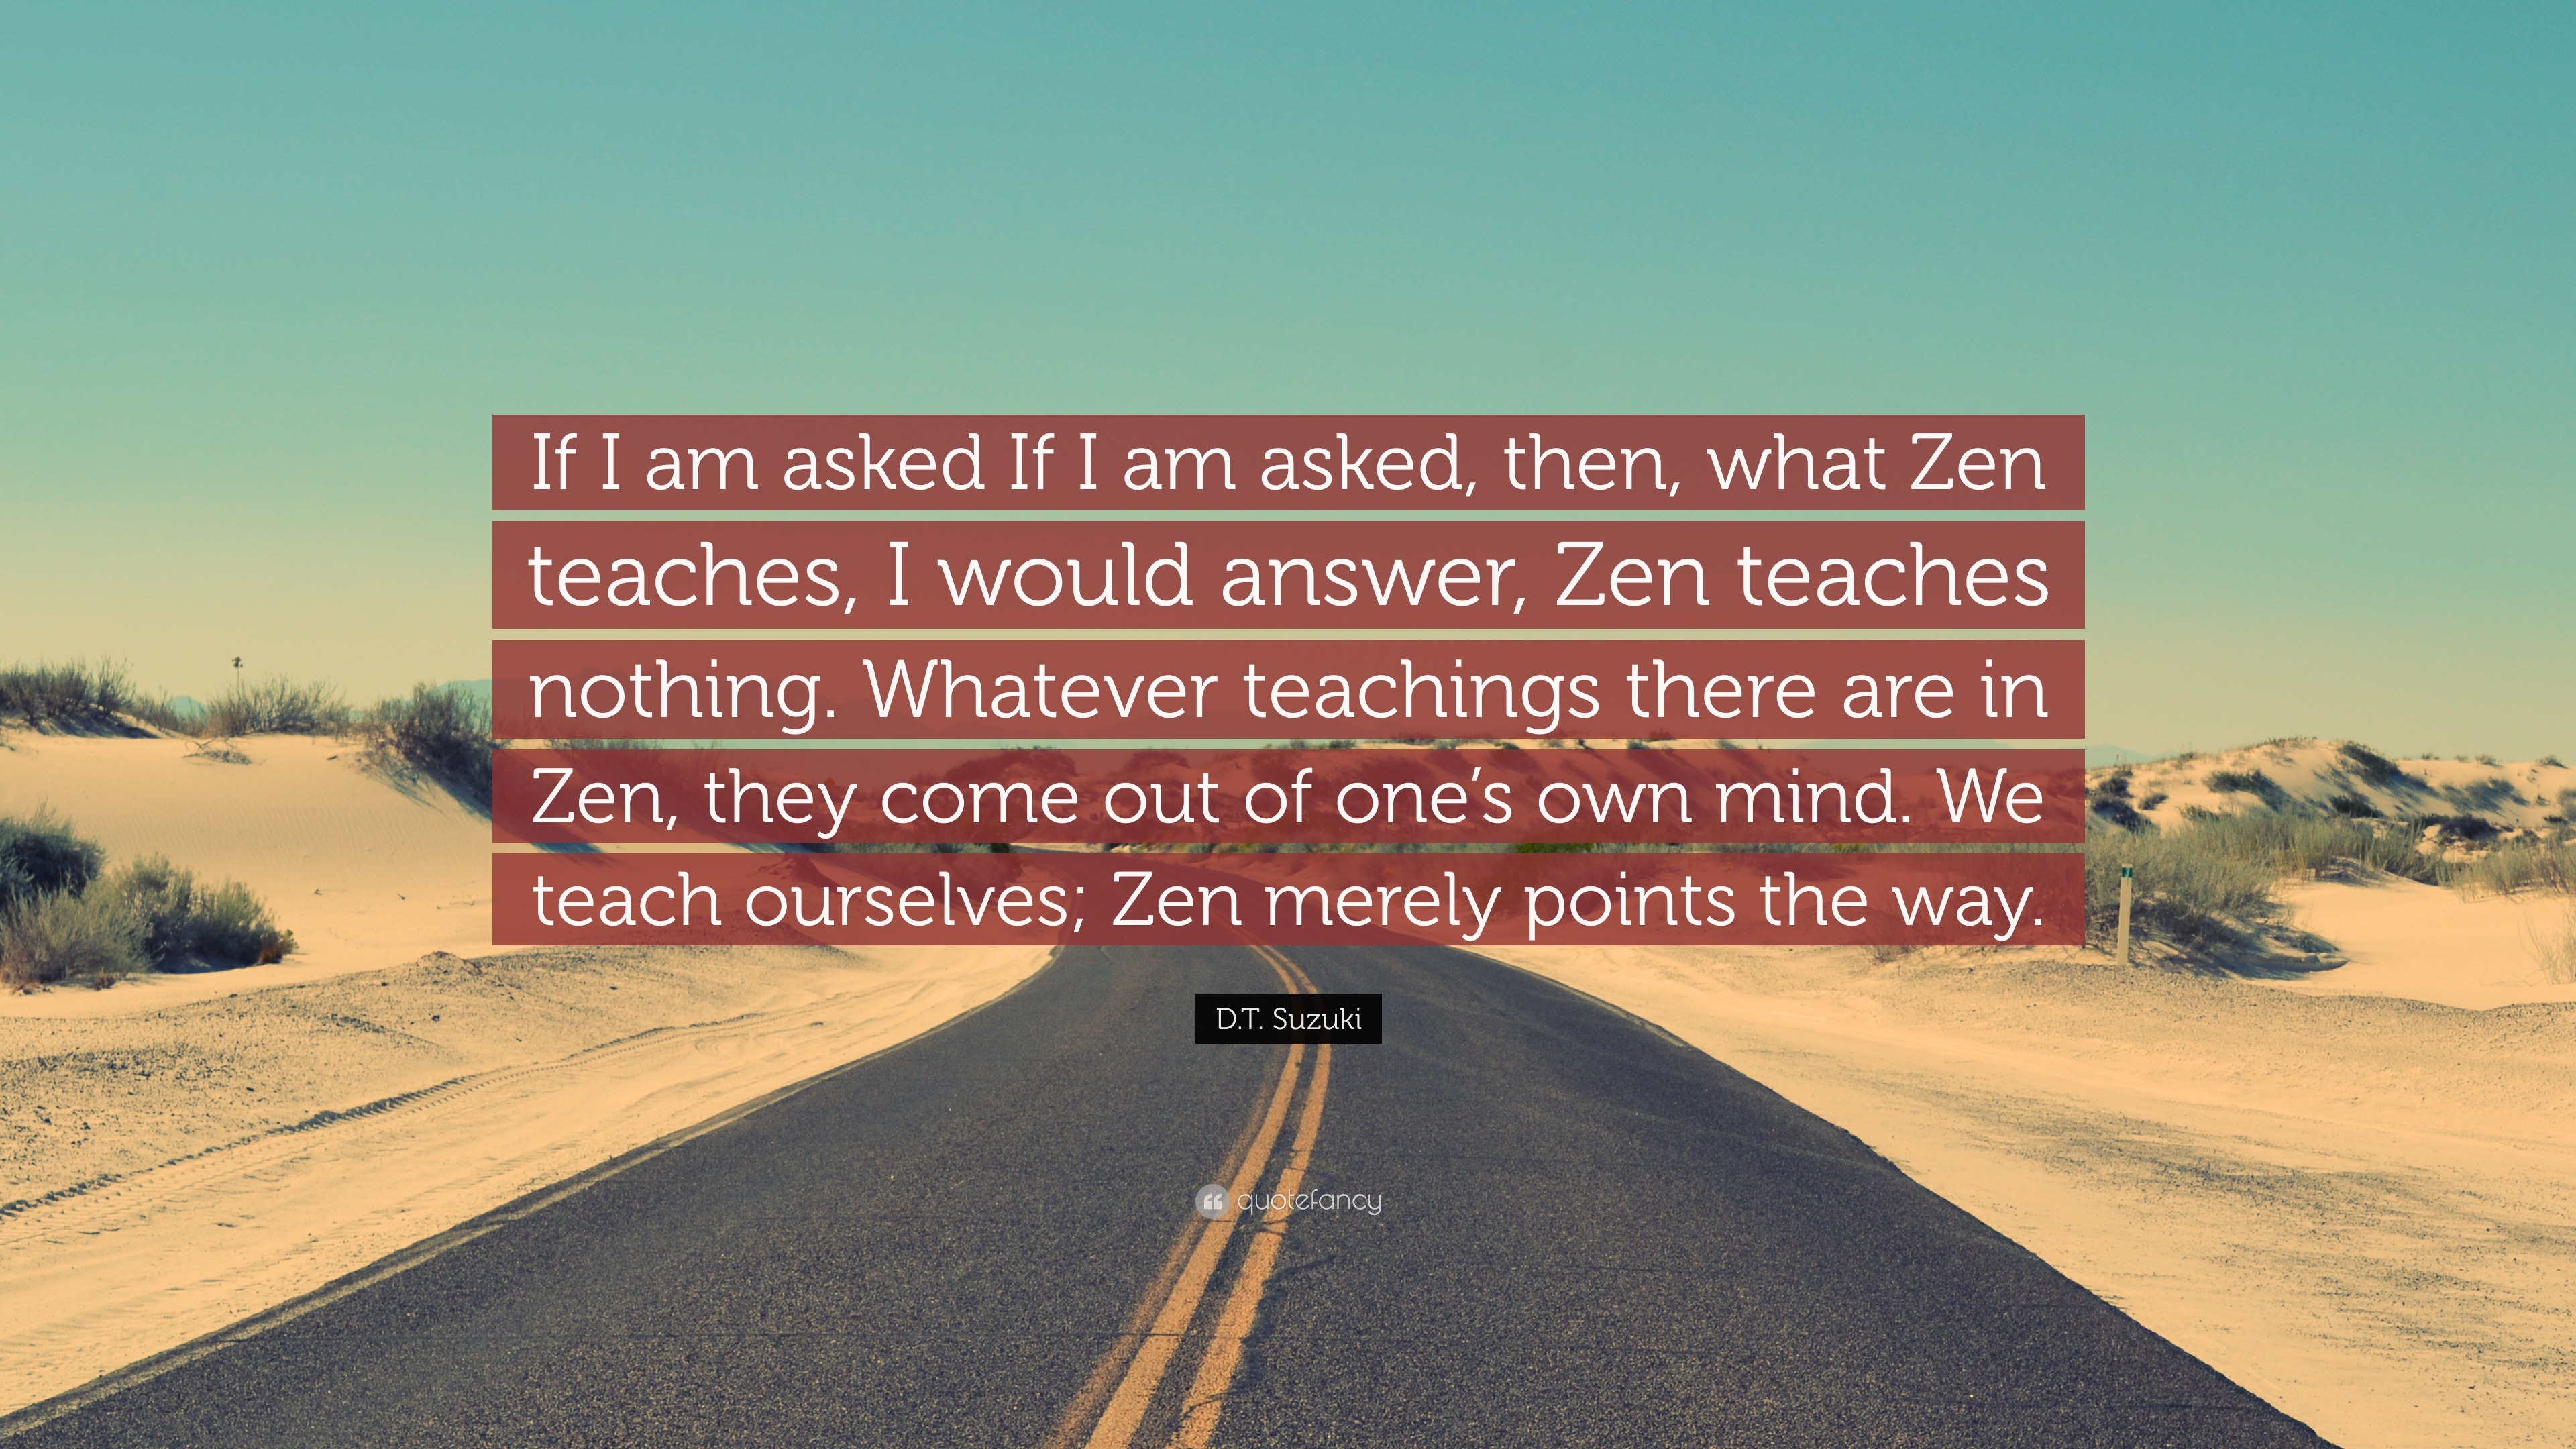 There Is No Teacher of Zen